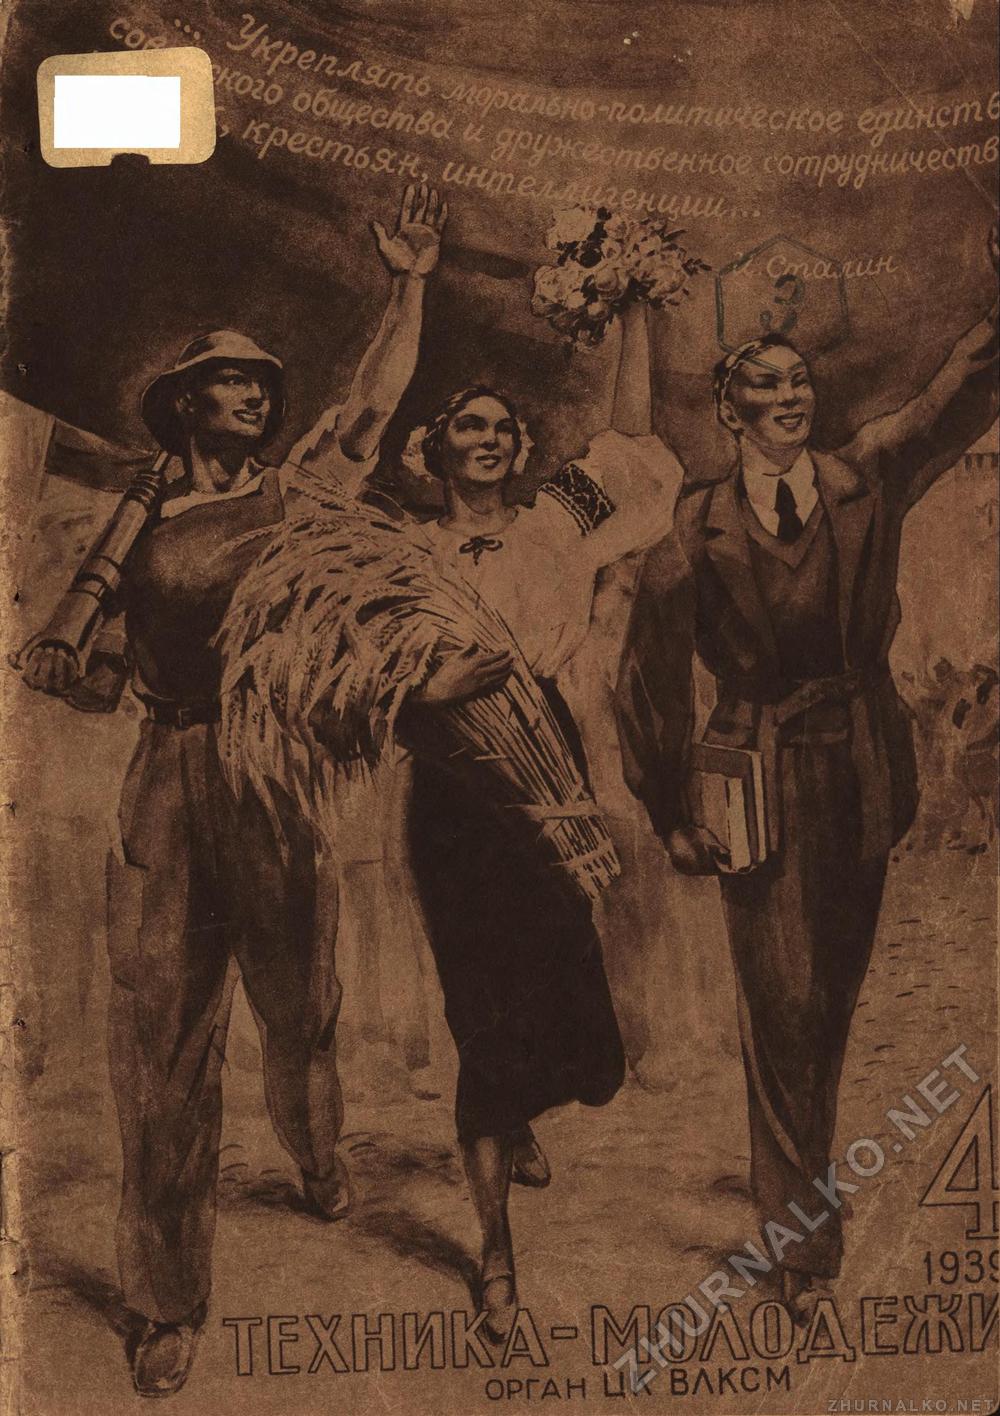 Скачать книгу коллектив авторов - Техника–молодежи, 4, 1939 г.